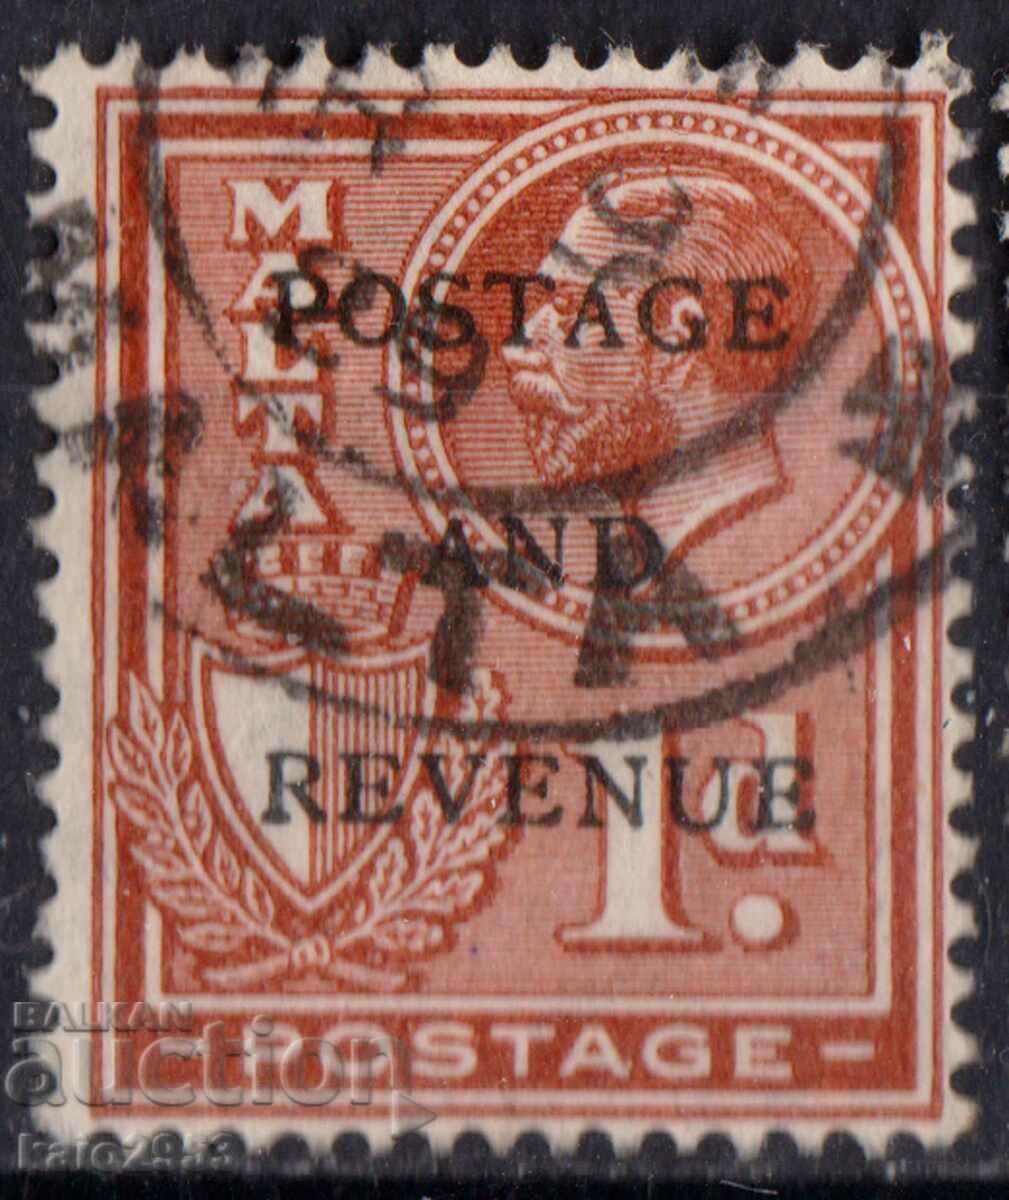 GB/Malta-1928-Regular KG V-Postage Revenue, stamp